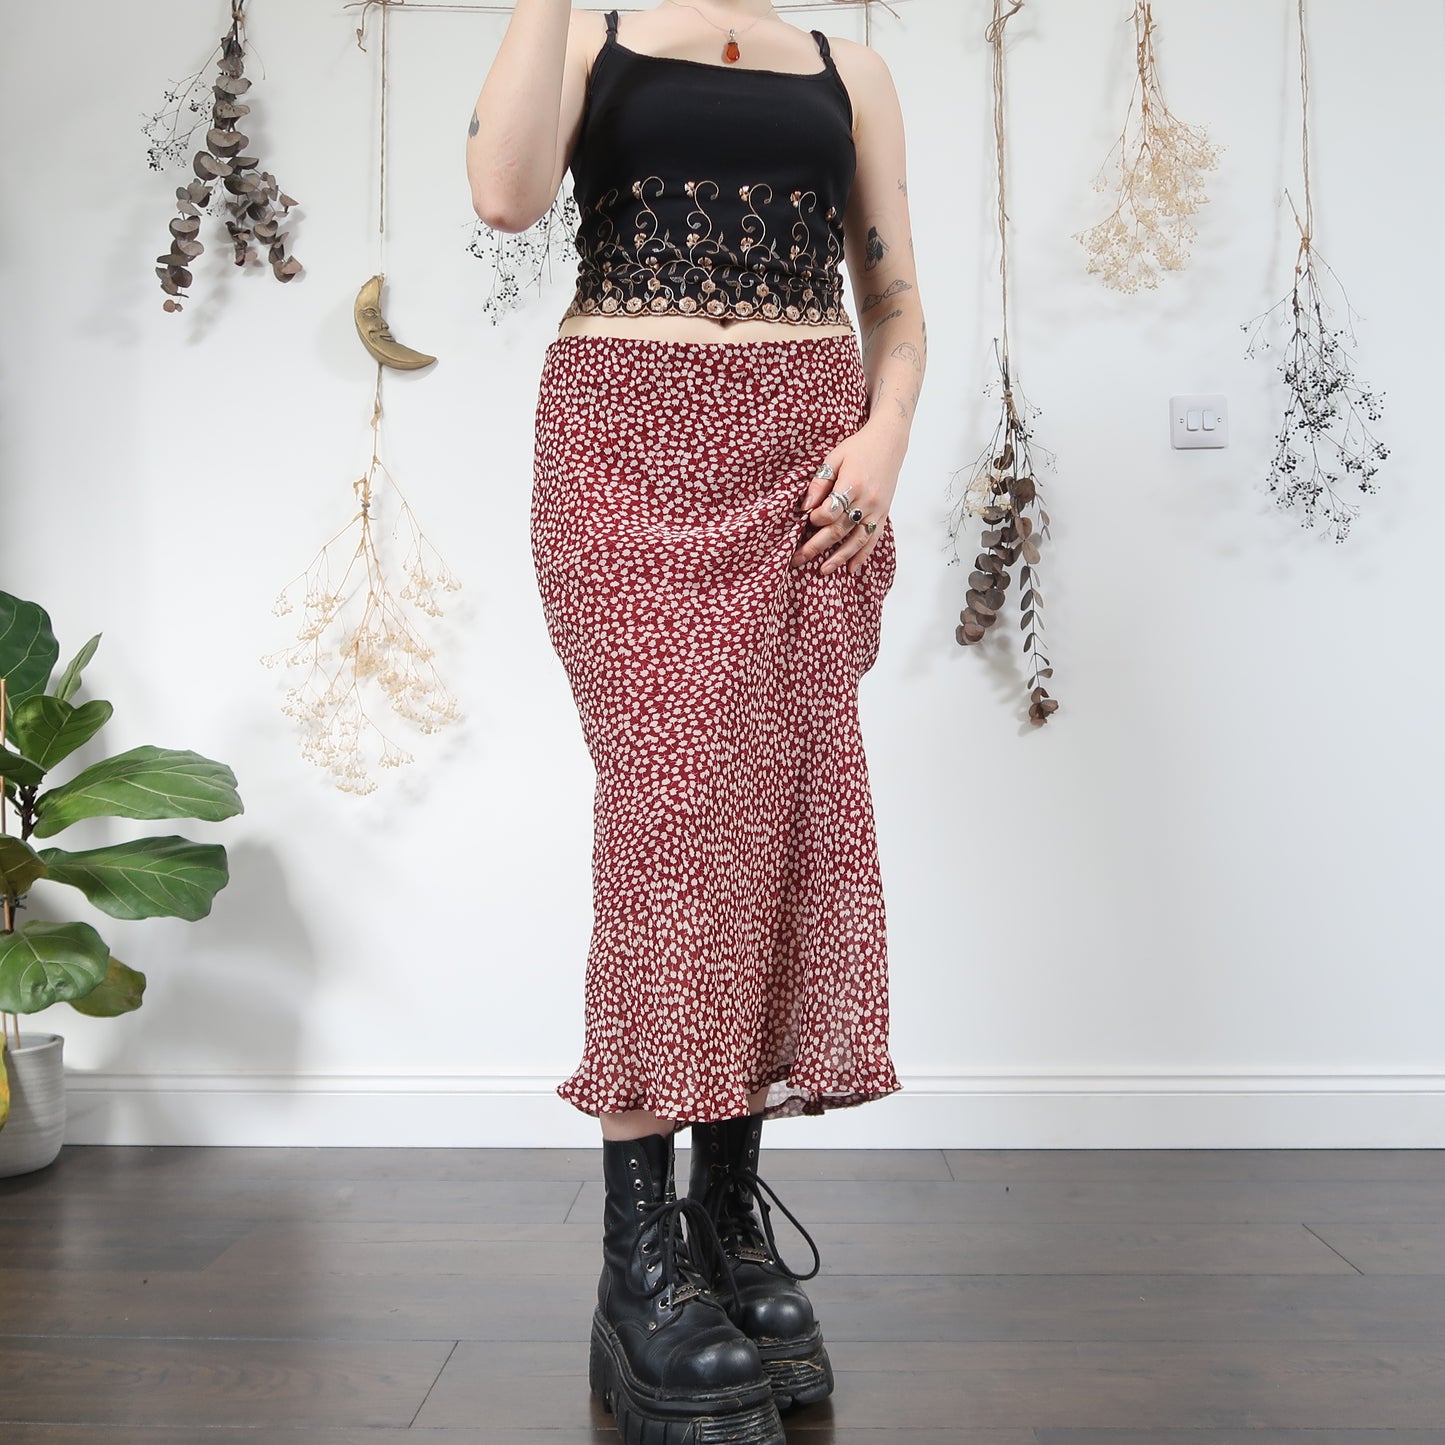 Burgundy floral skirt - size M/L